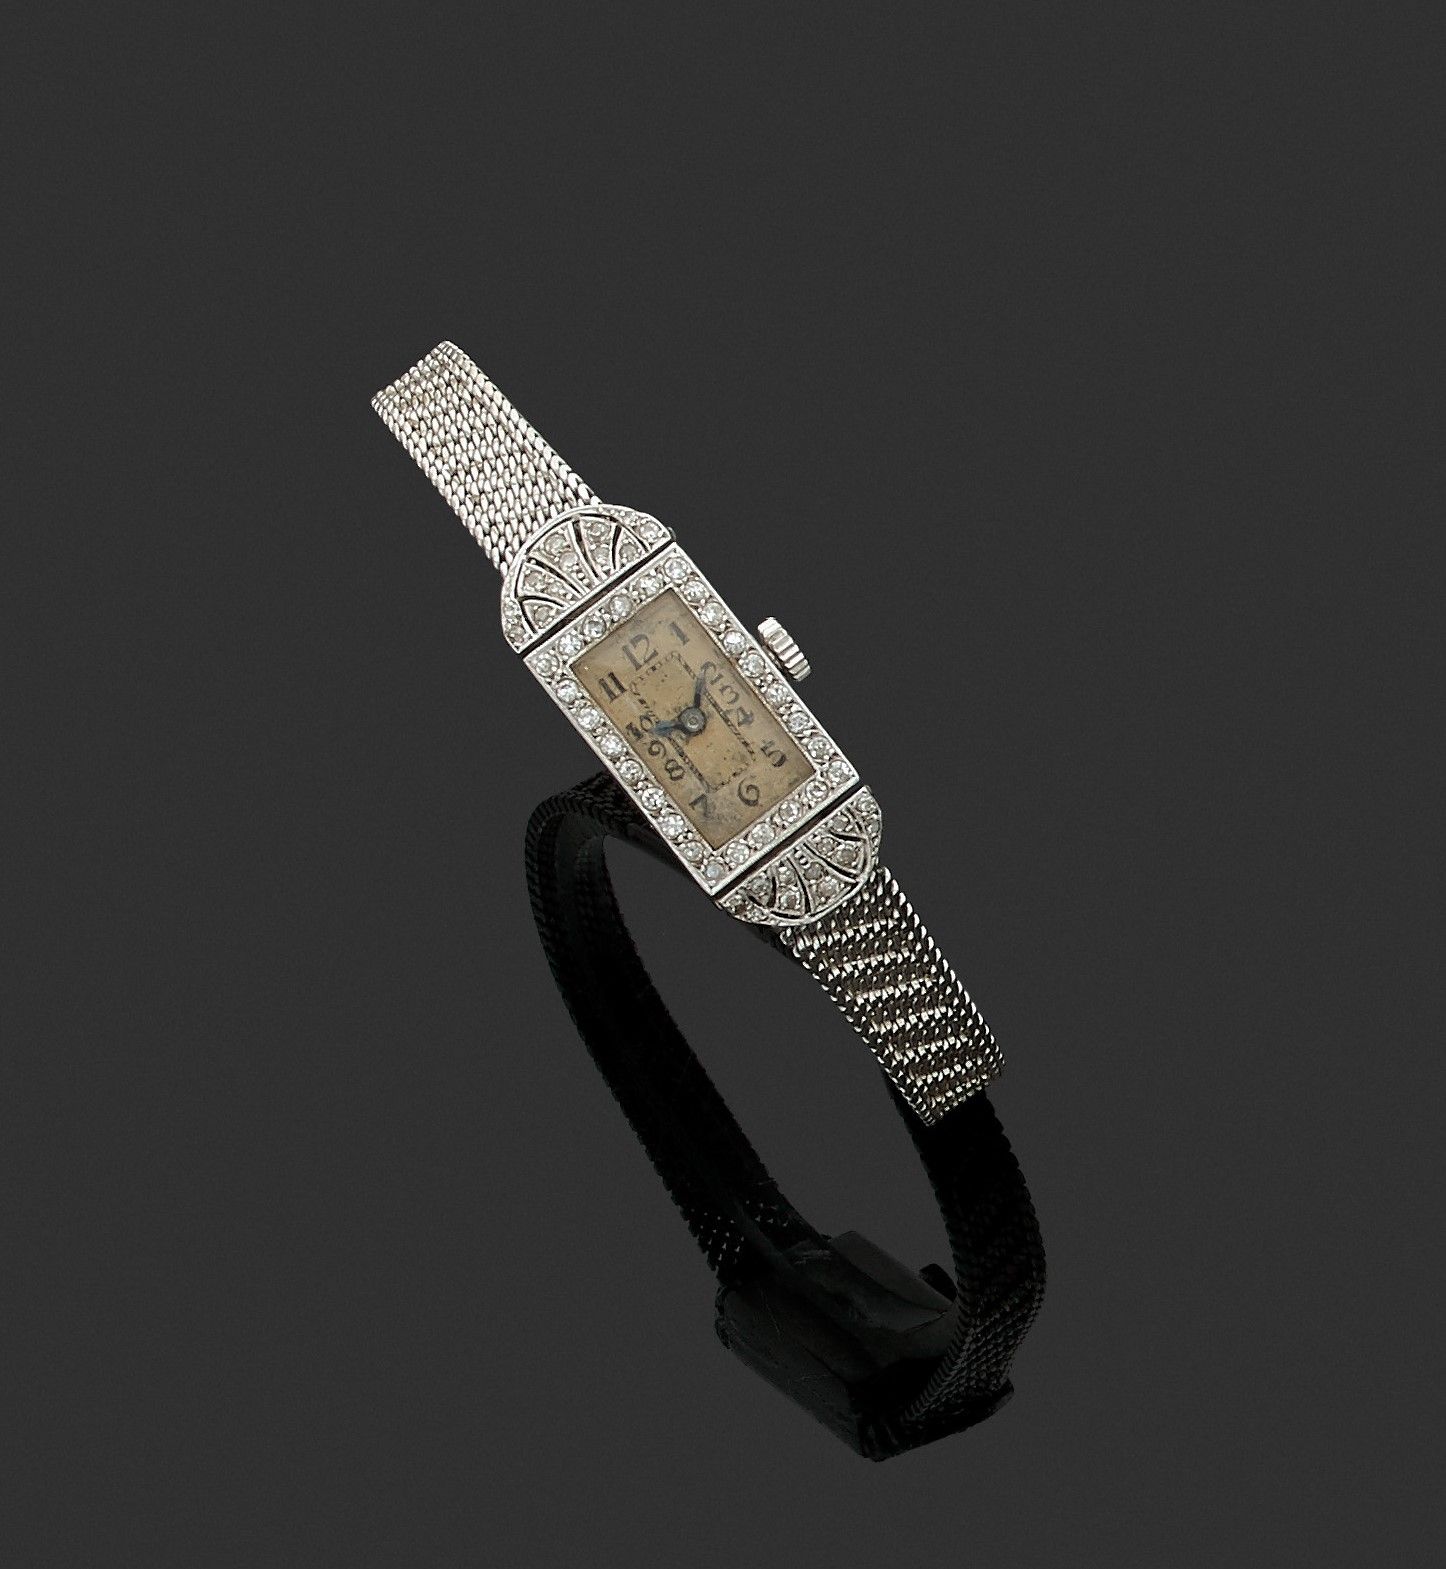 Null 18K（750）白金和铂金女士腕表。长方形表壳，表圈和表耳采用棕榈形设计，镶嵌8/8切割钻石。奶油色表盘上有阿拉伯数字。该手镯略有磨损（修改、氧化）。&hellip;